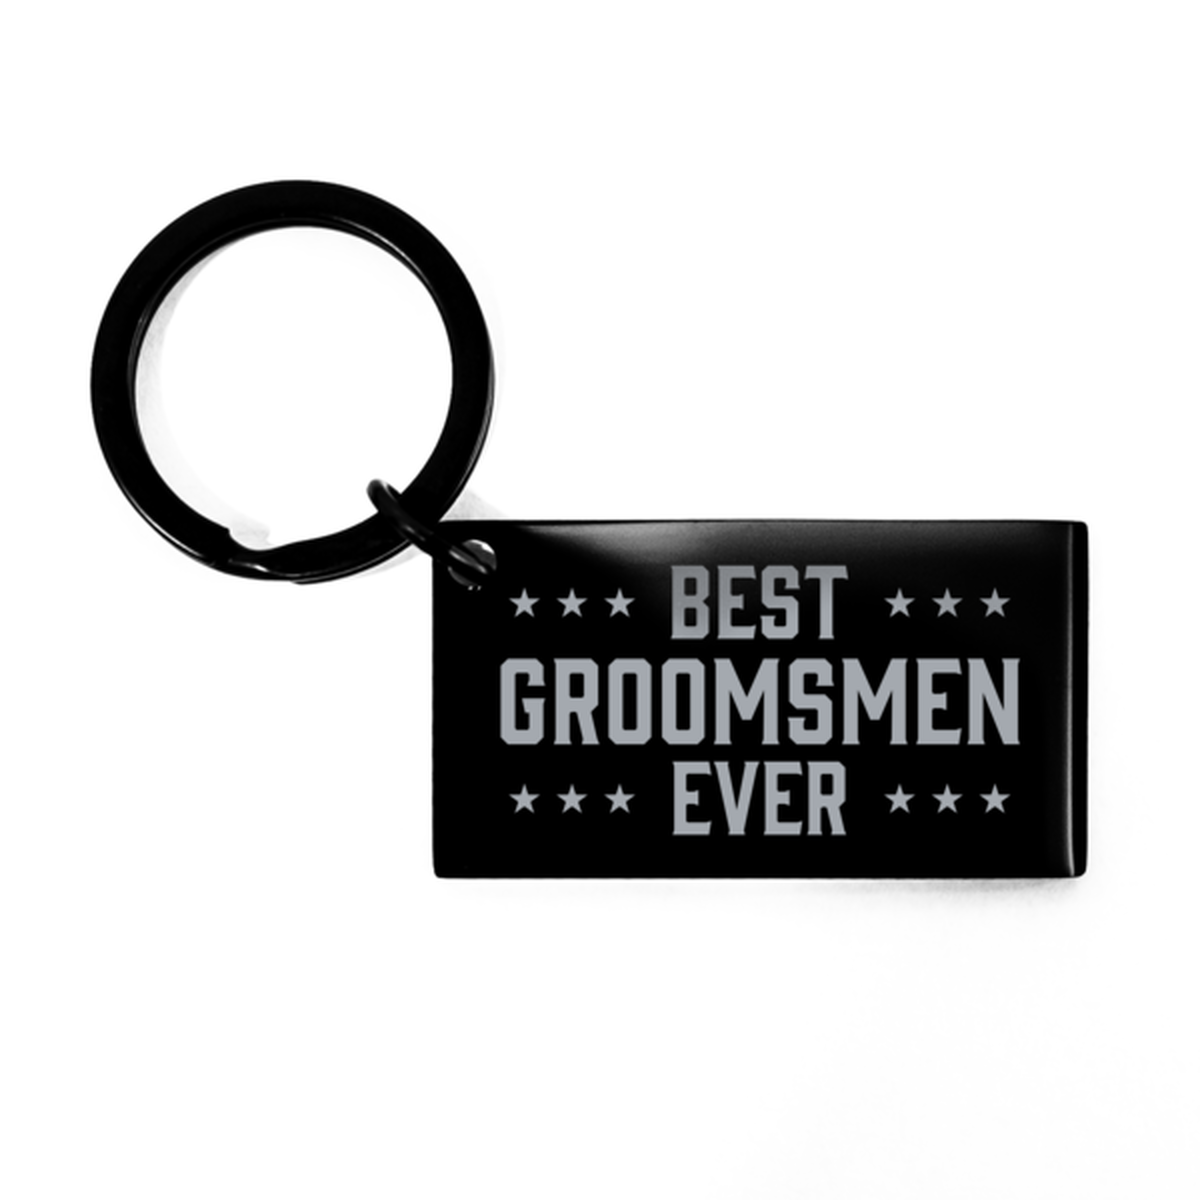 Best Groomsmen Ever Groomsmen Gifts, Funny Black Keychain For Groomsmen, Birthday Engraved Keyring Presents For Men